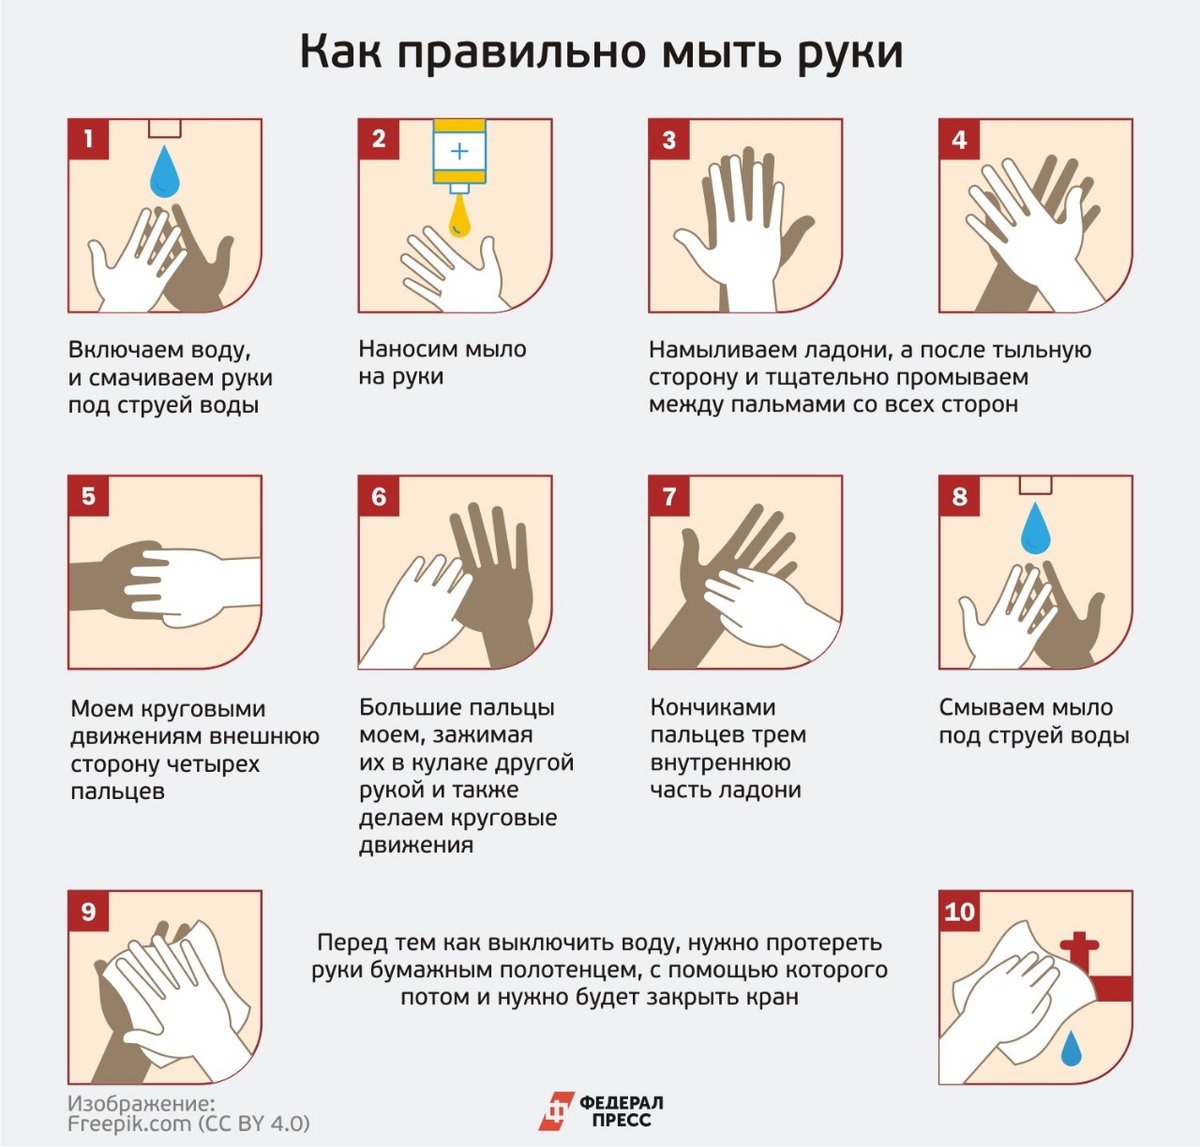 Температура при мытье рук. Как правильно мыть руки. КККМ правильн омыть руки. Памятка Моем руки правильно. КПК правилльнл мыть руки.